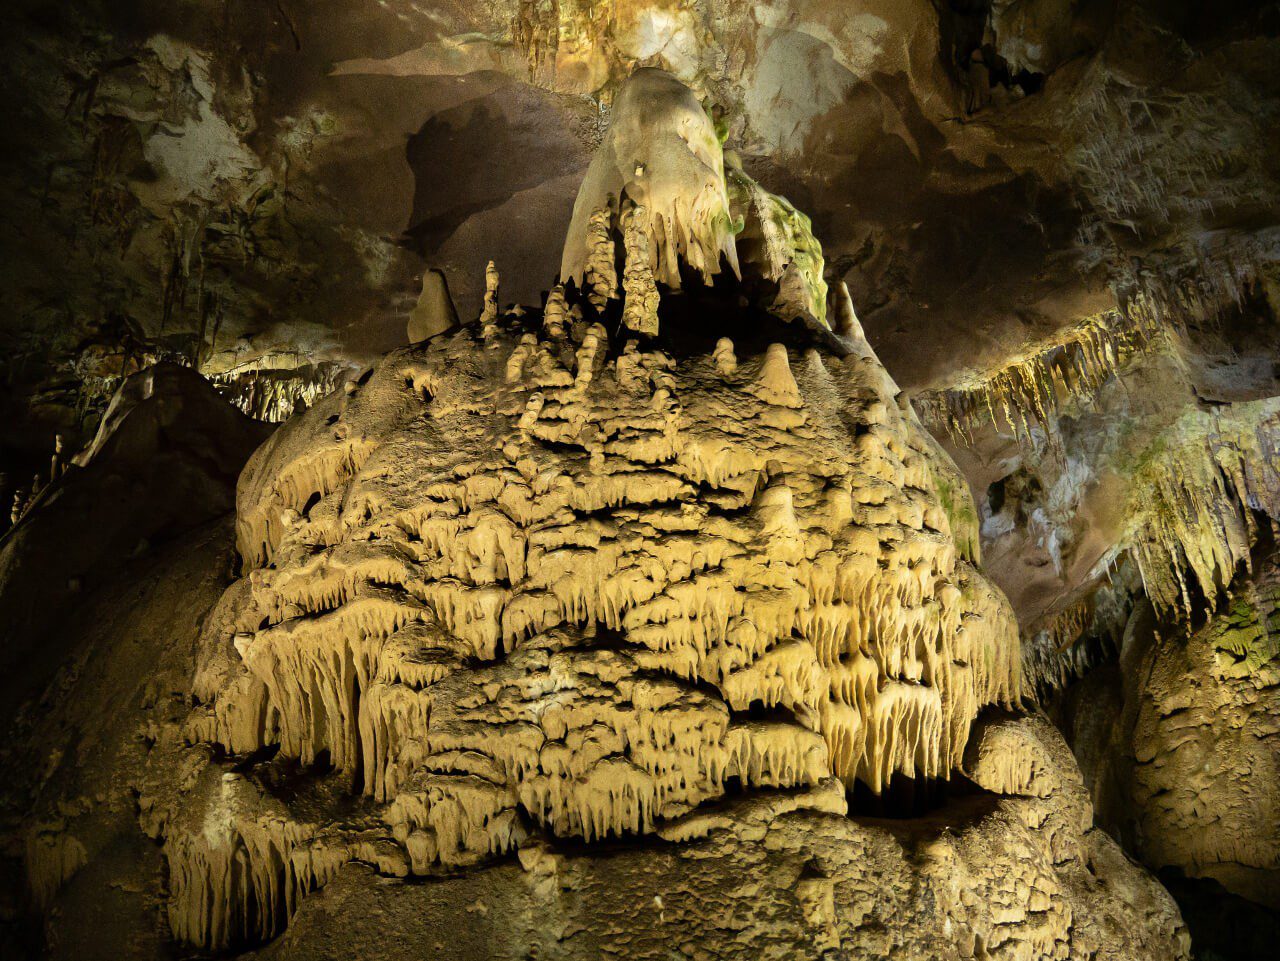 Ciekawe skały w Jaskini Prometeusza